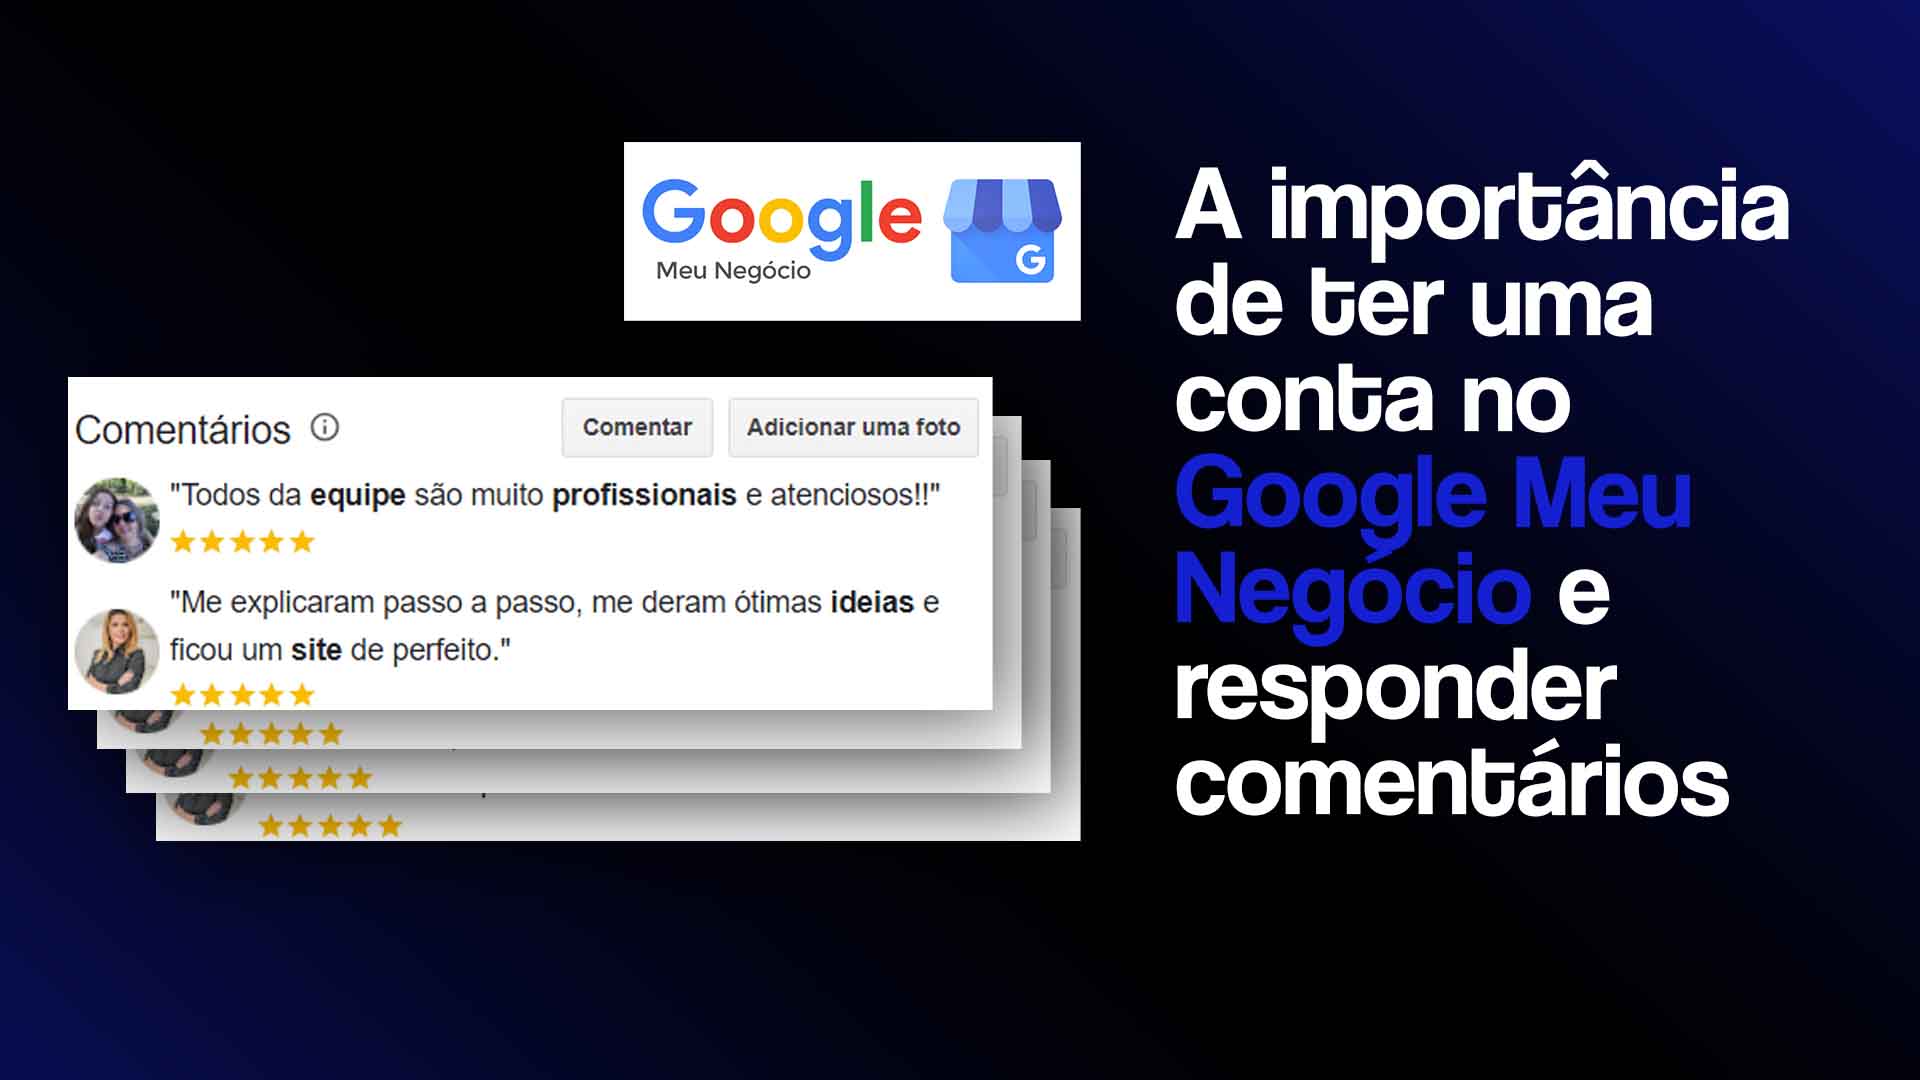 Logo do Google Meu Negócio e prints de avaliações realizadas no Google, com o seguinte texto ao lado: A importância de ter uma conta no Google Meu Negócio e responder comentários.